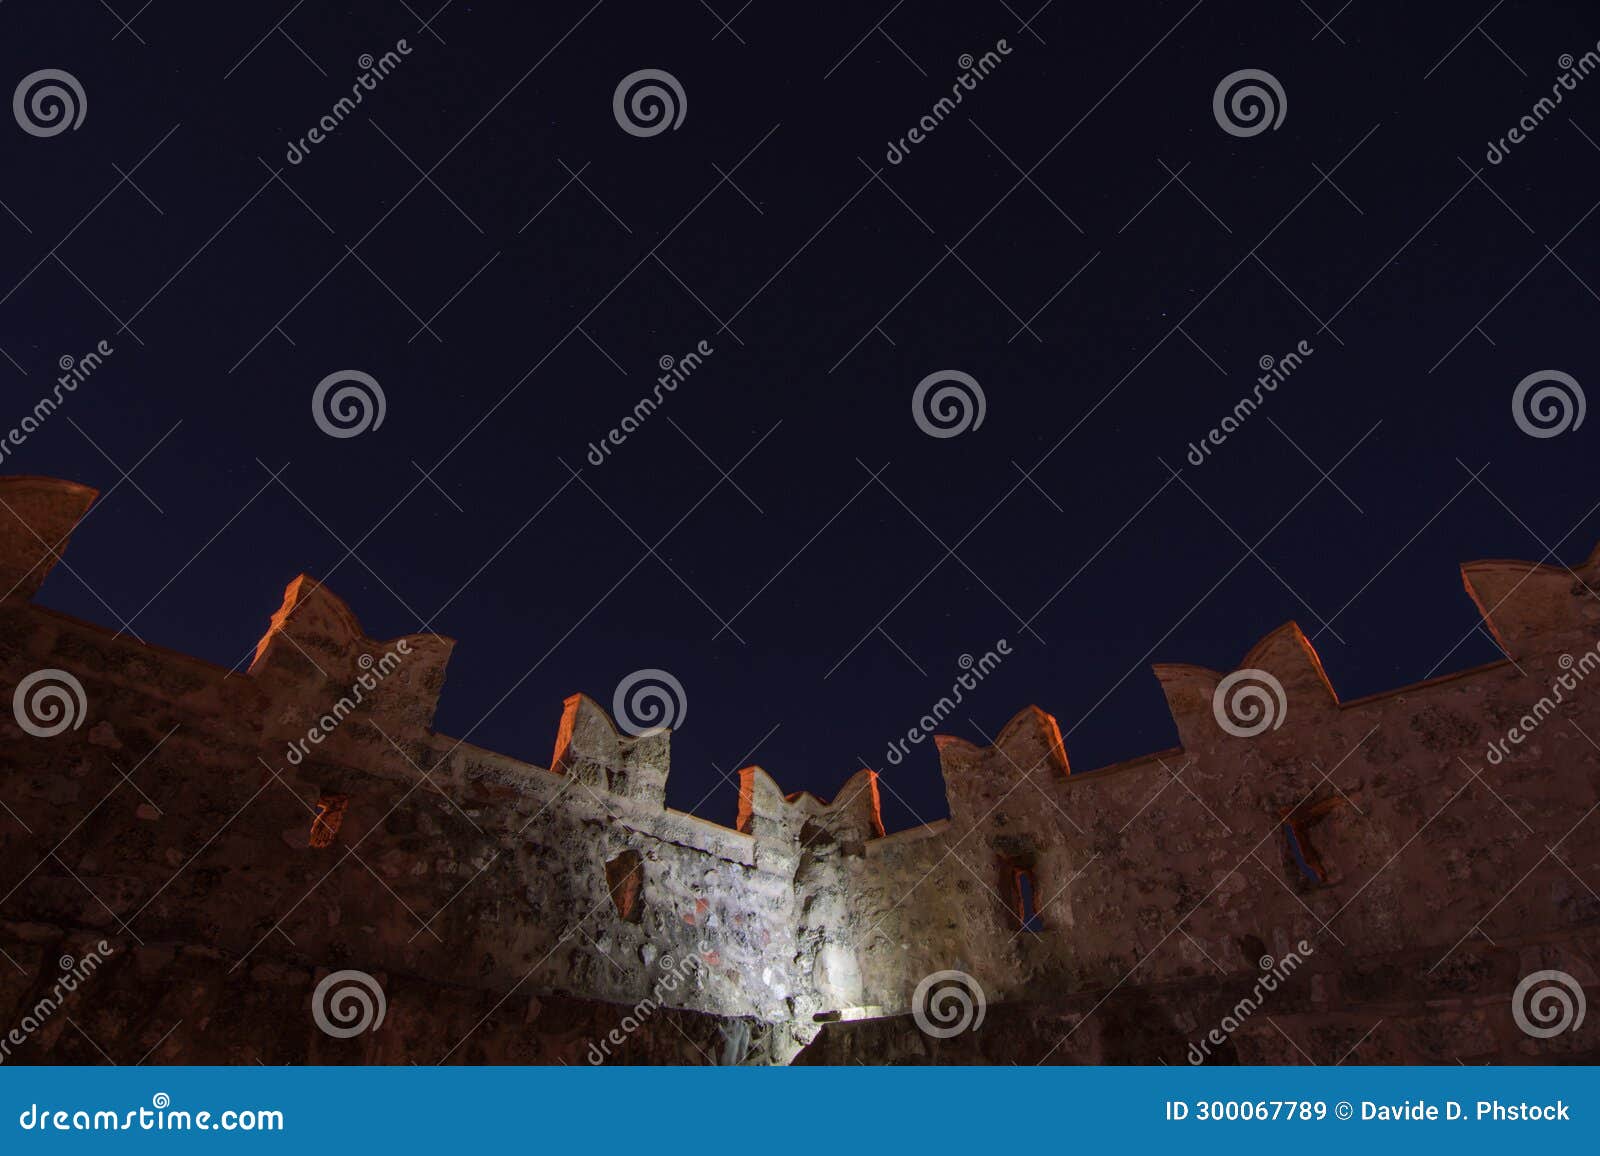 la grua-talamanca castle of carini, italy